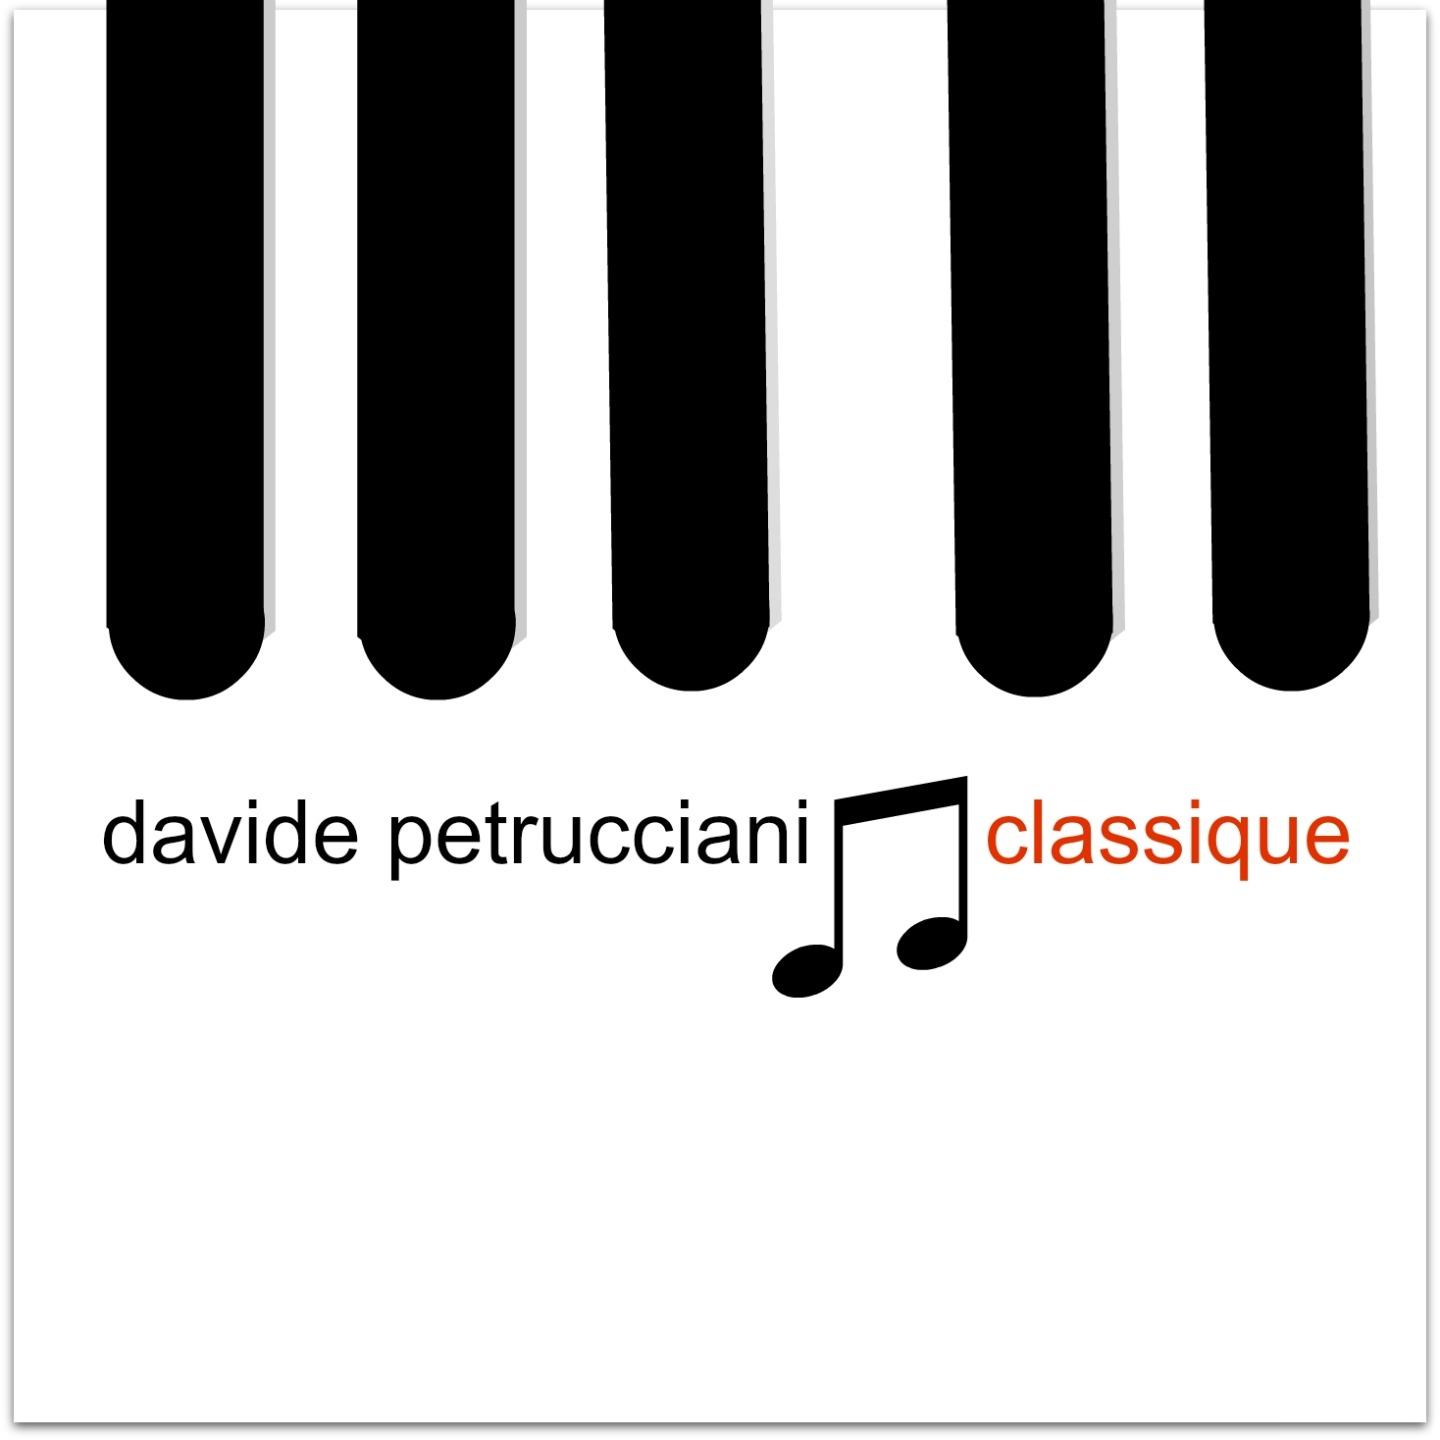 Petrucciani classique